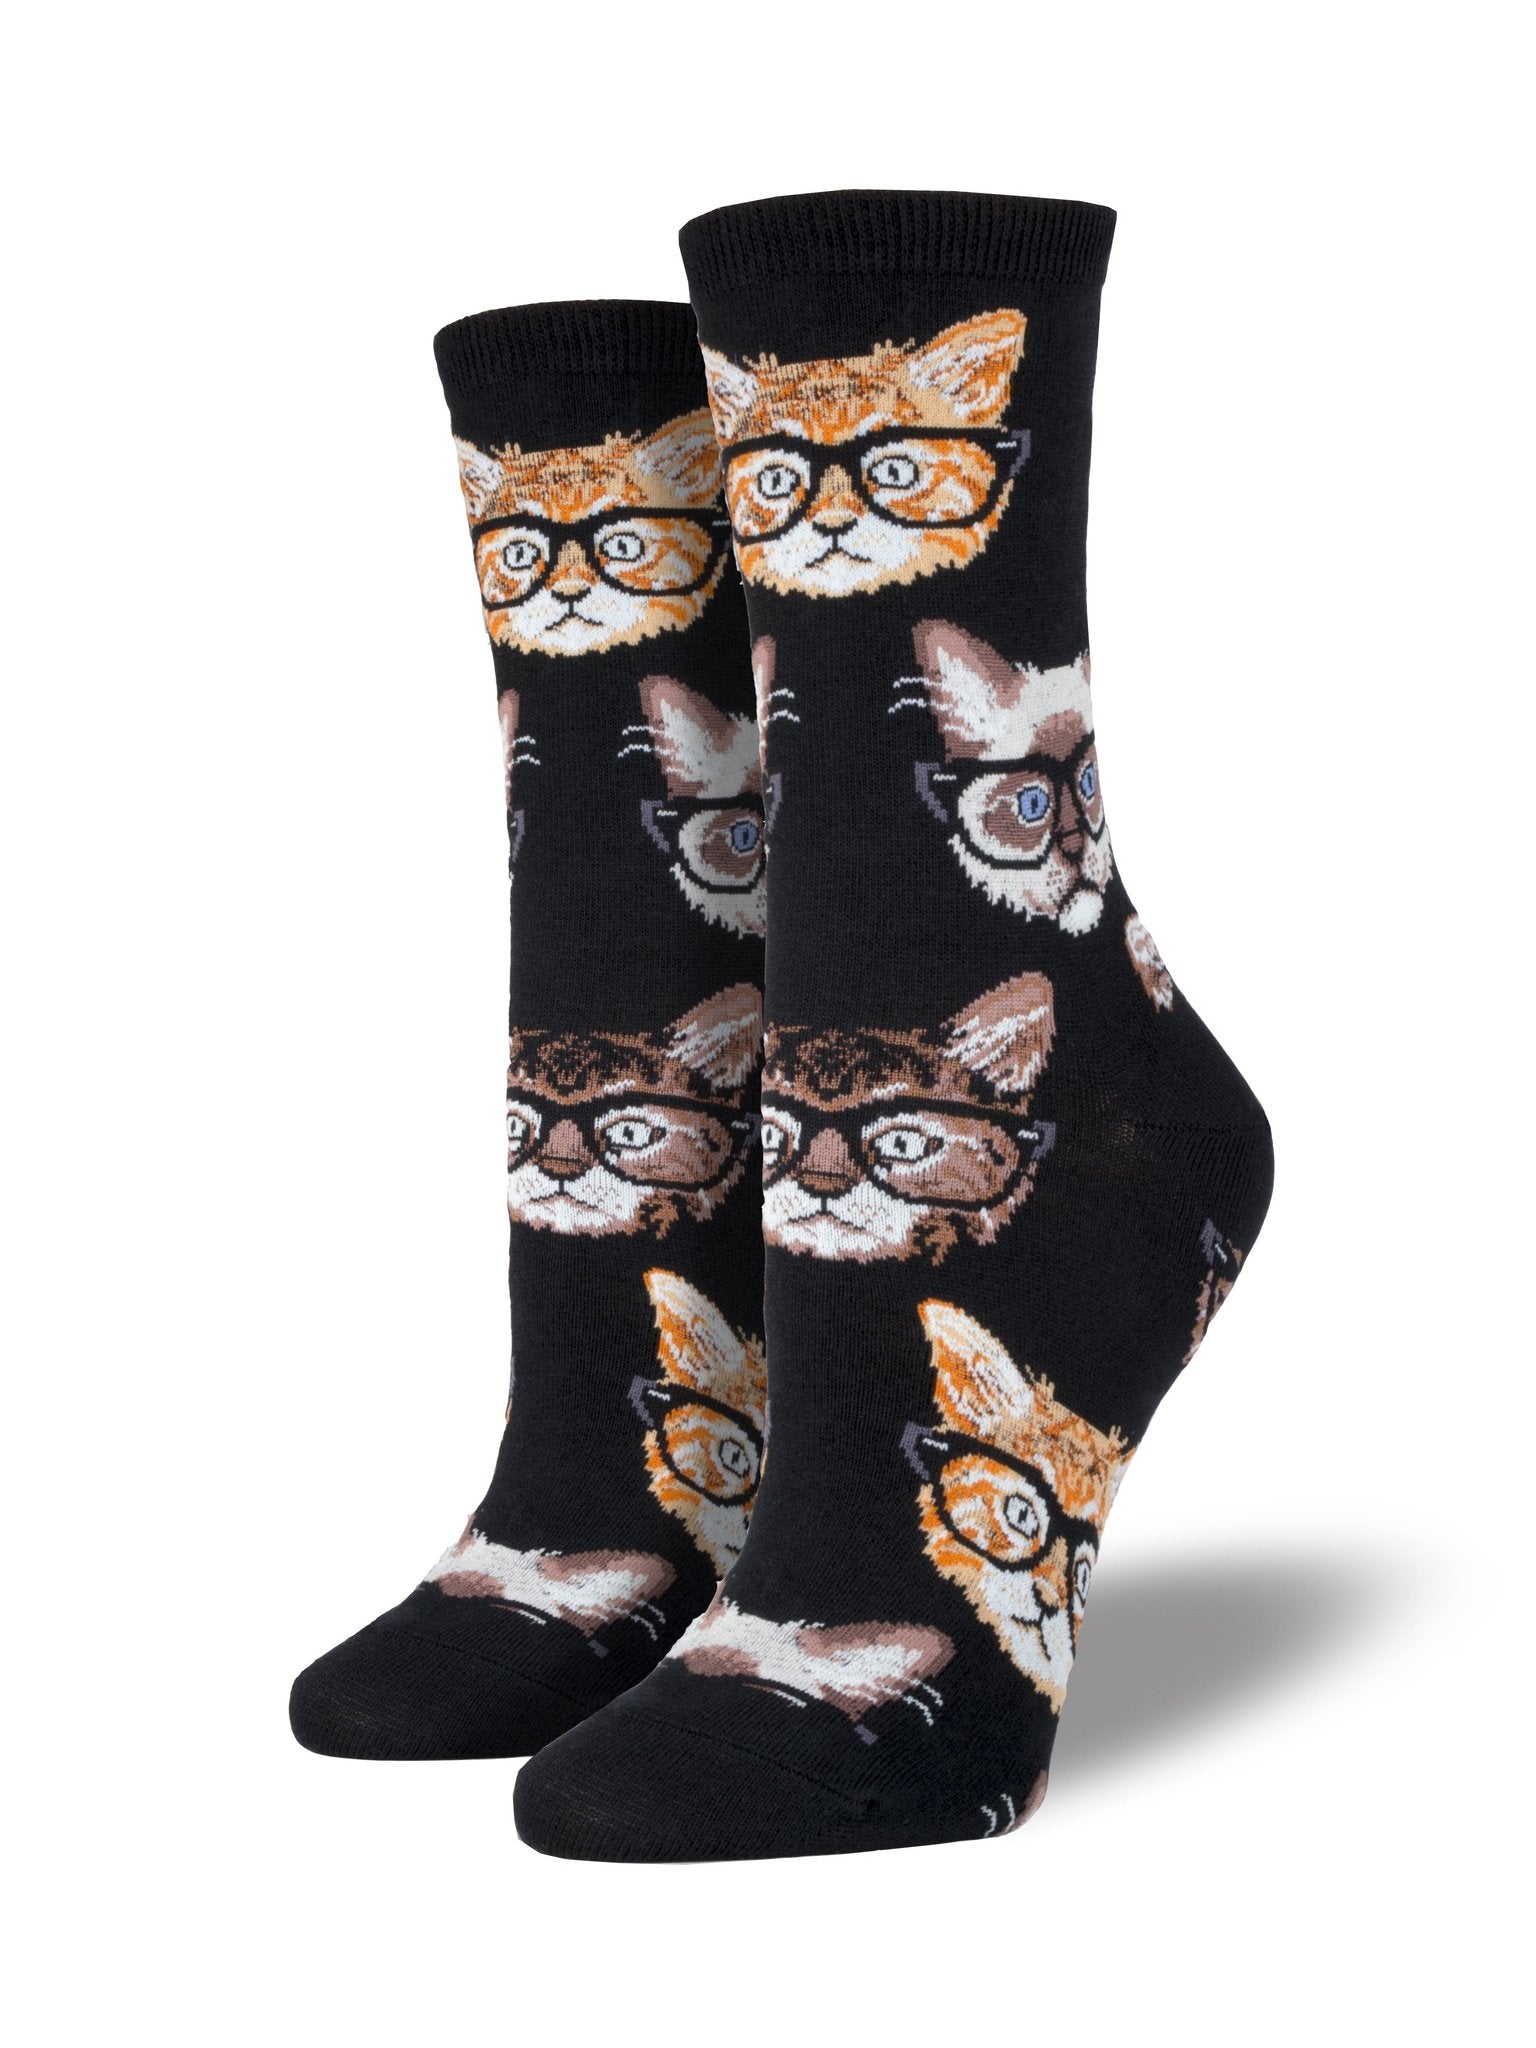 Kittenster Socks Women's Socks